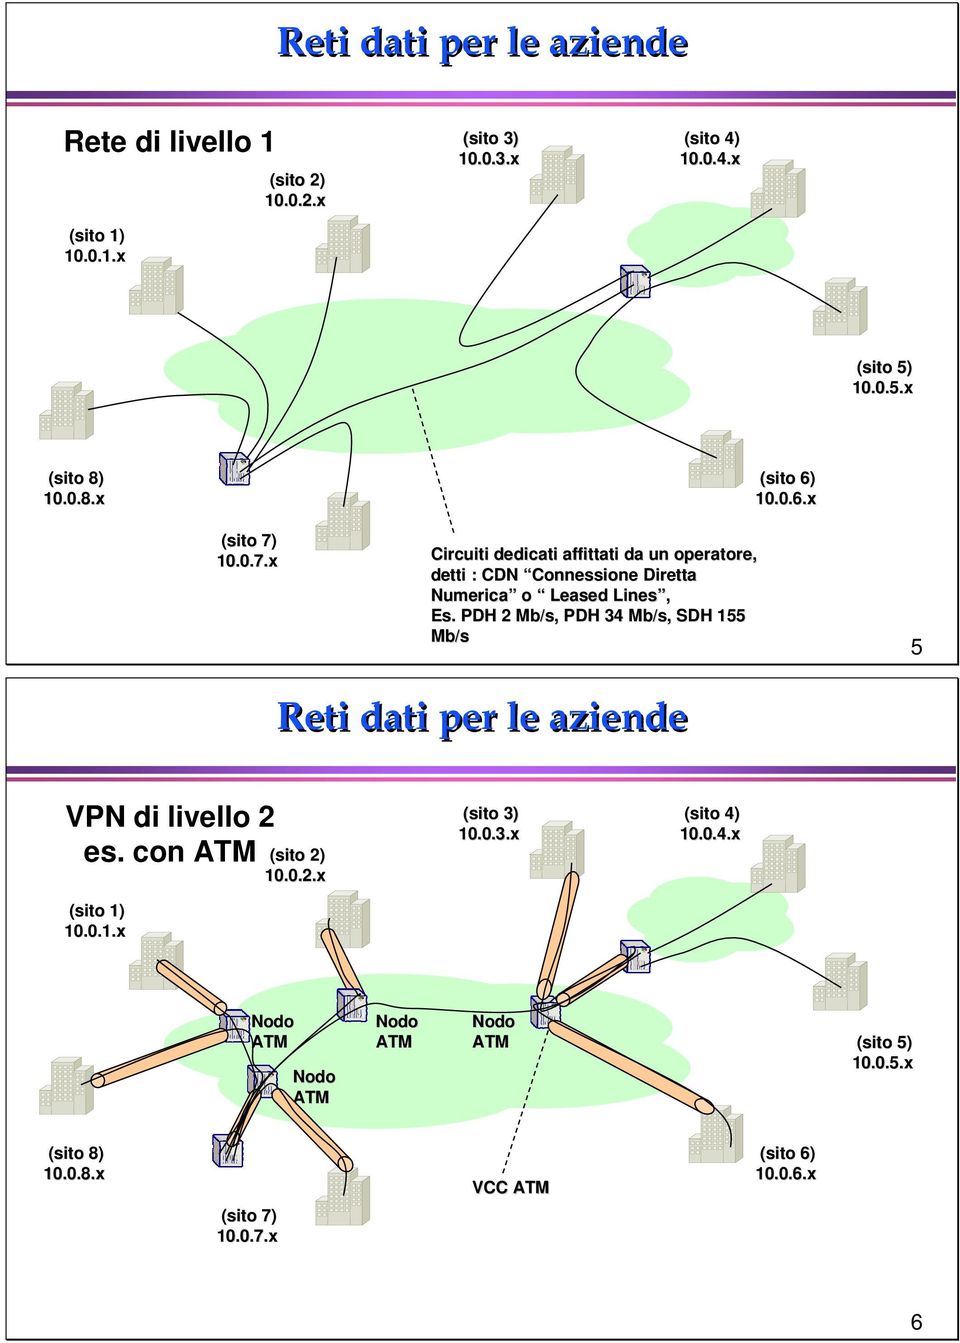 PDH 2 Mb/s, PDH 34 Mb/s, SDH 155 Mb/s 5 Reti dati per le aziende VPN di livello 2 es. con ATM 1) 10.0.1.x 2) 10.0.2.x 3) 10.